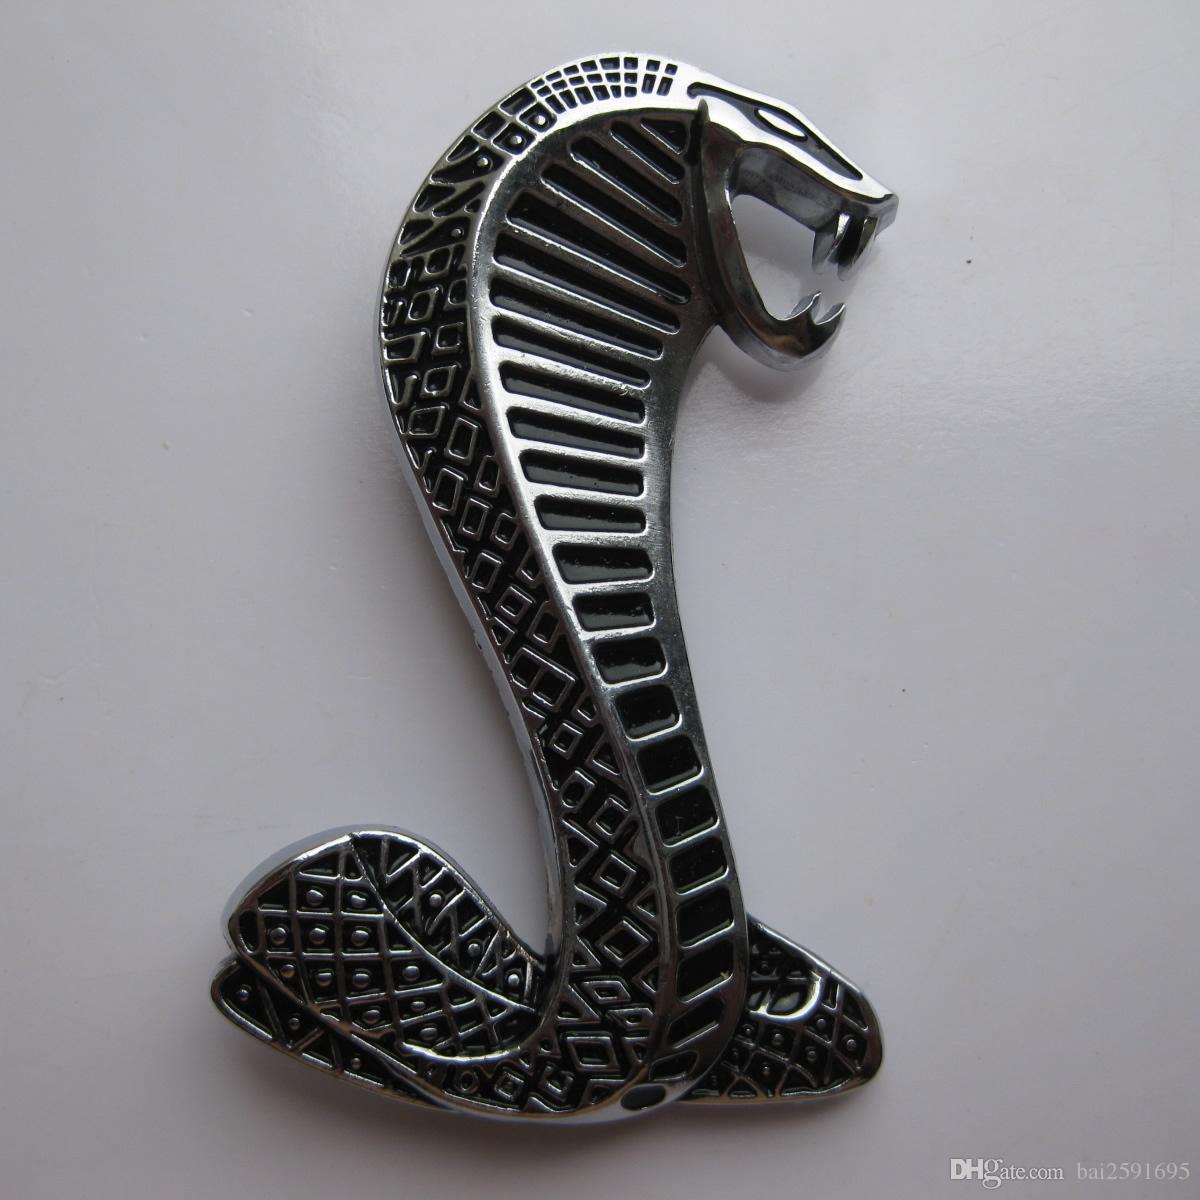 Cobra Snake Logo - FORD MUSTANG COBRA SNAKE SUPER SHELBY FRONT GRILL LOGO EMBLEM BADGE ...